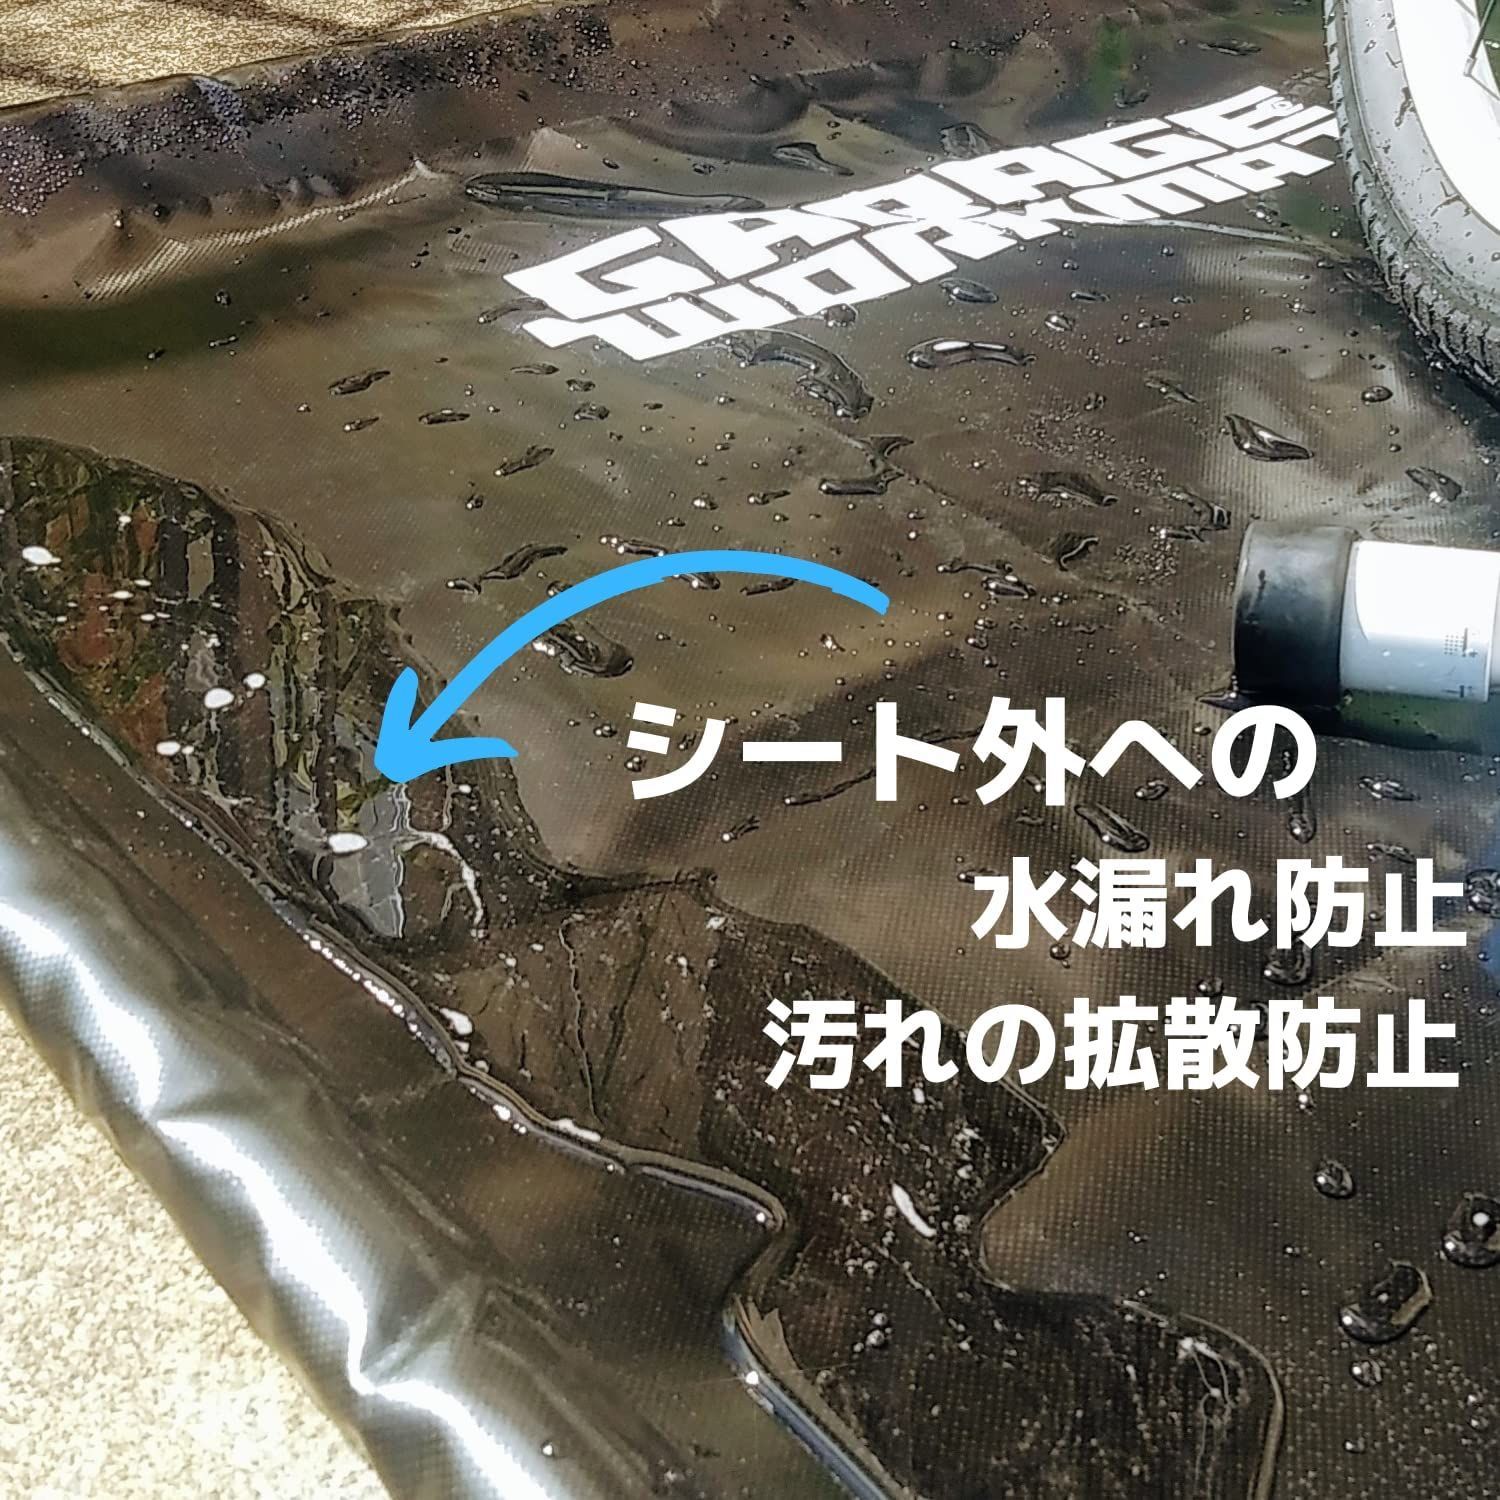 特価セール】GARAGE-WORK-MAT 防水 マット フロア バイク メンテナンス